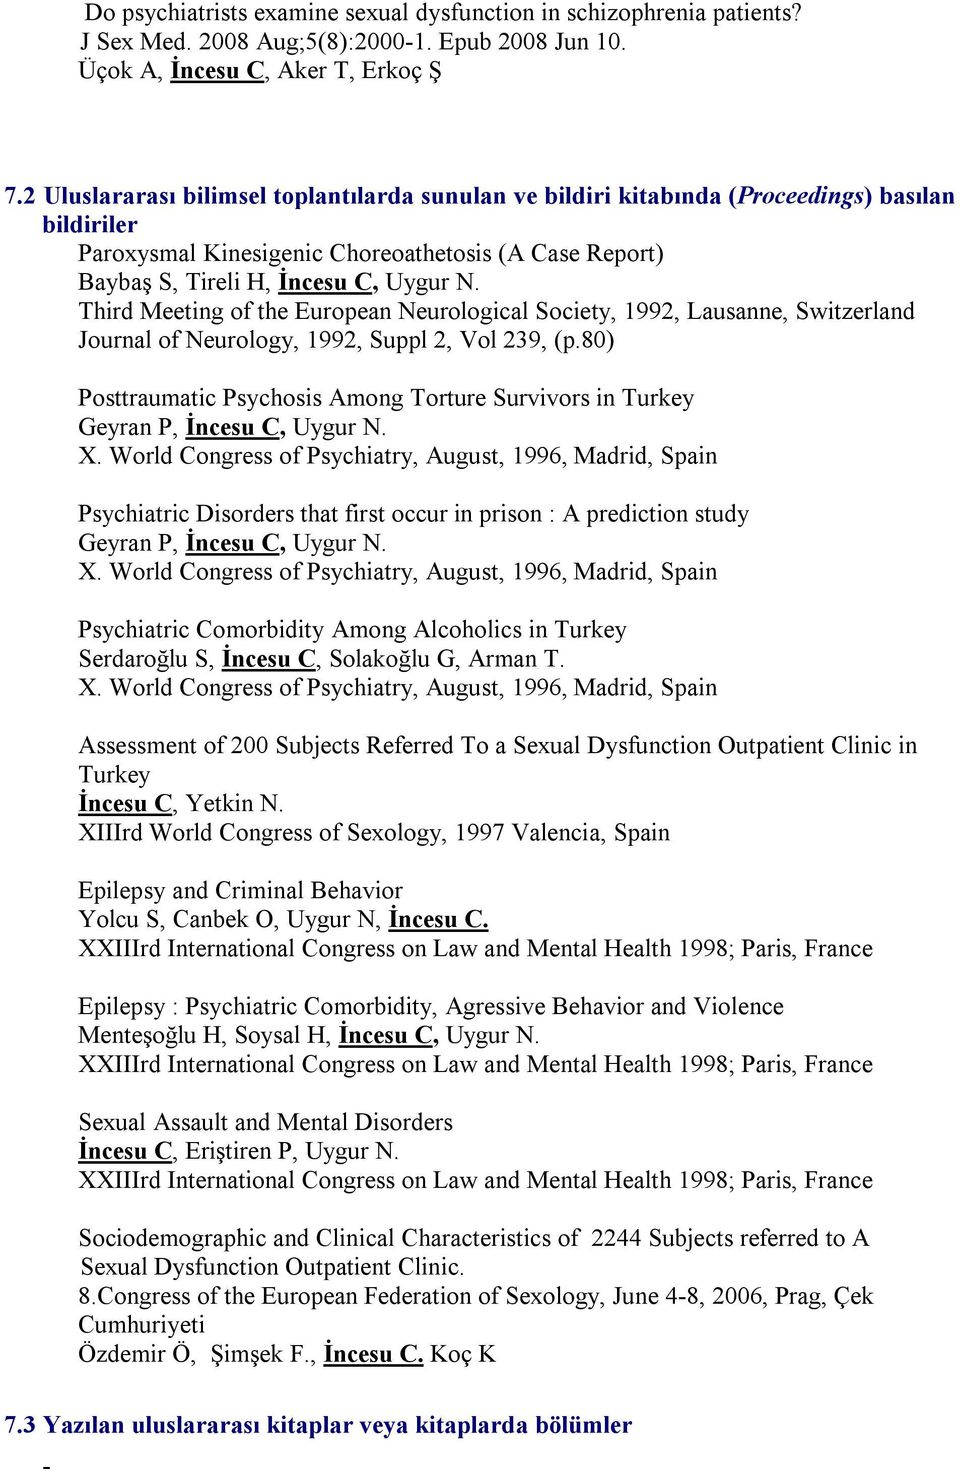 Third Meeting of the European Neurological Society, 1992, Lausanne, Switzerland Journal of Neurology, 1992, Suppl 2, Vol 239, (p.